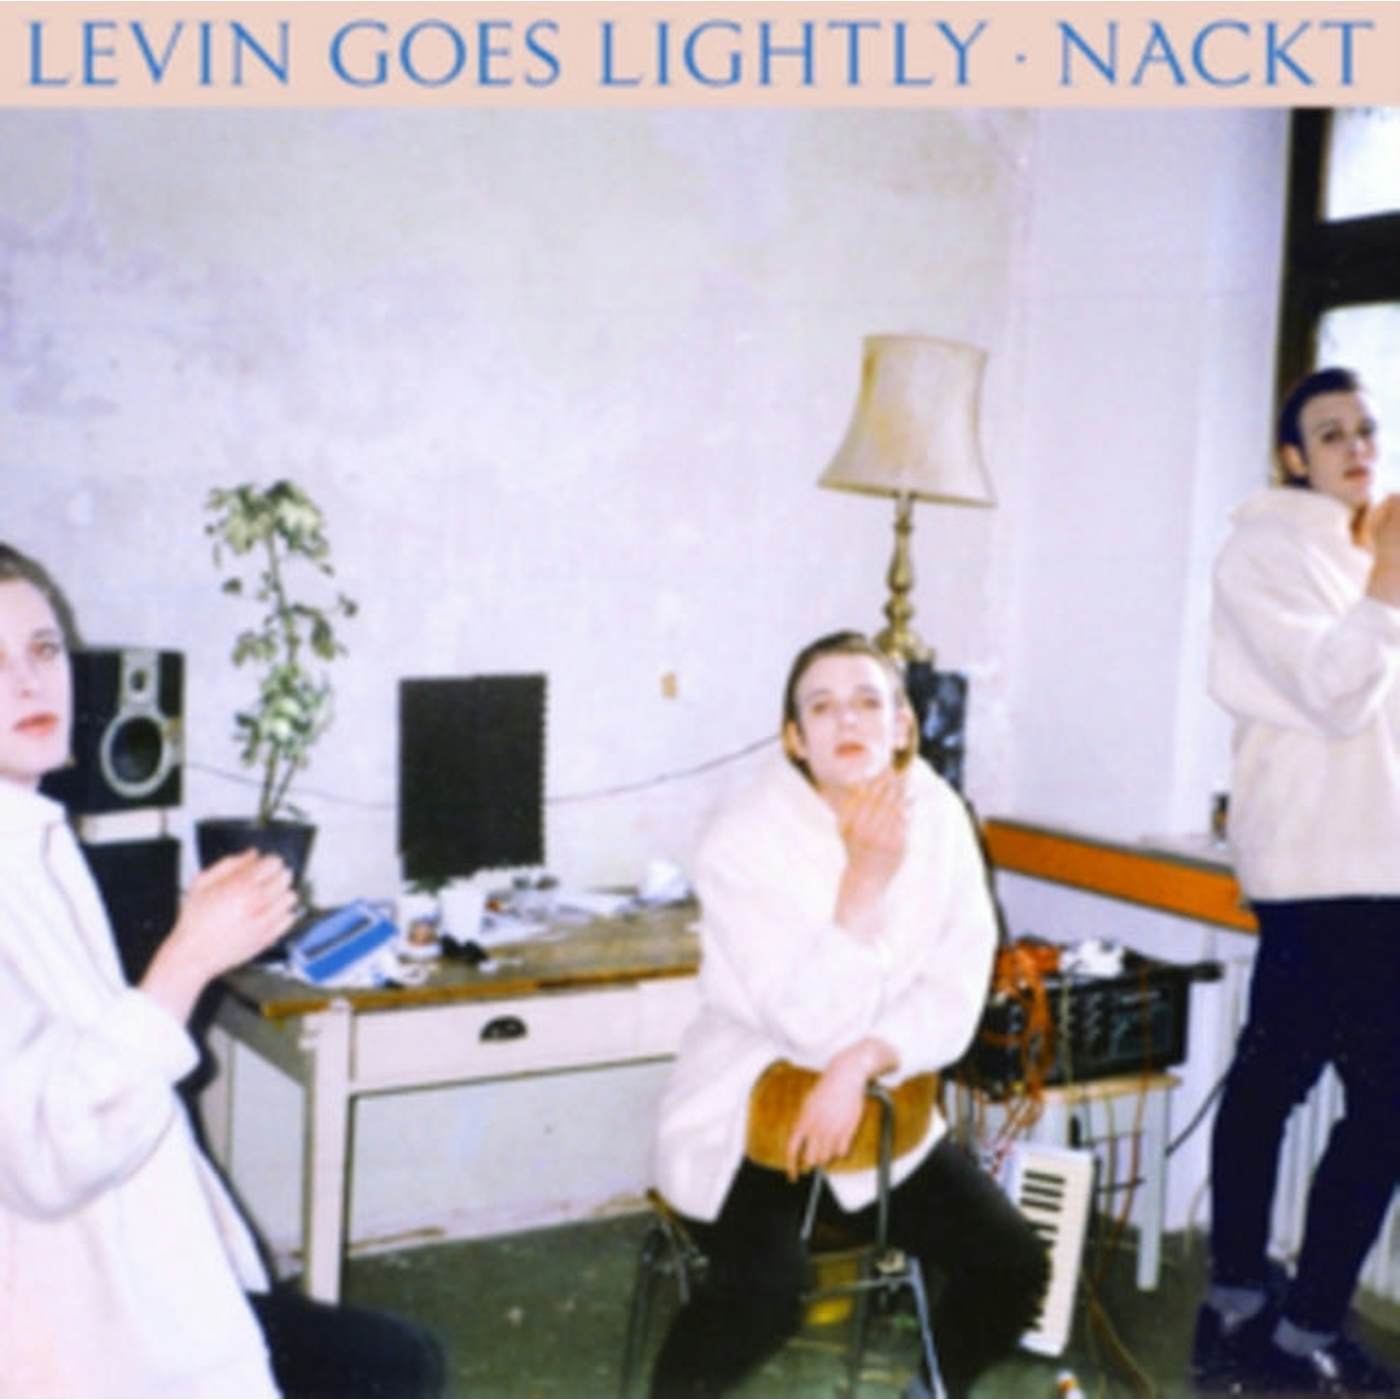 Levin Goes Lightly LP - Nackt (Vinyl)